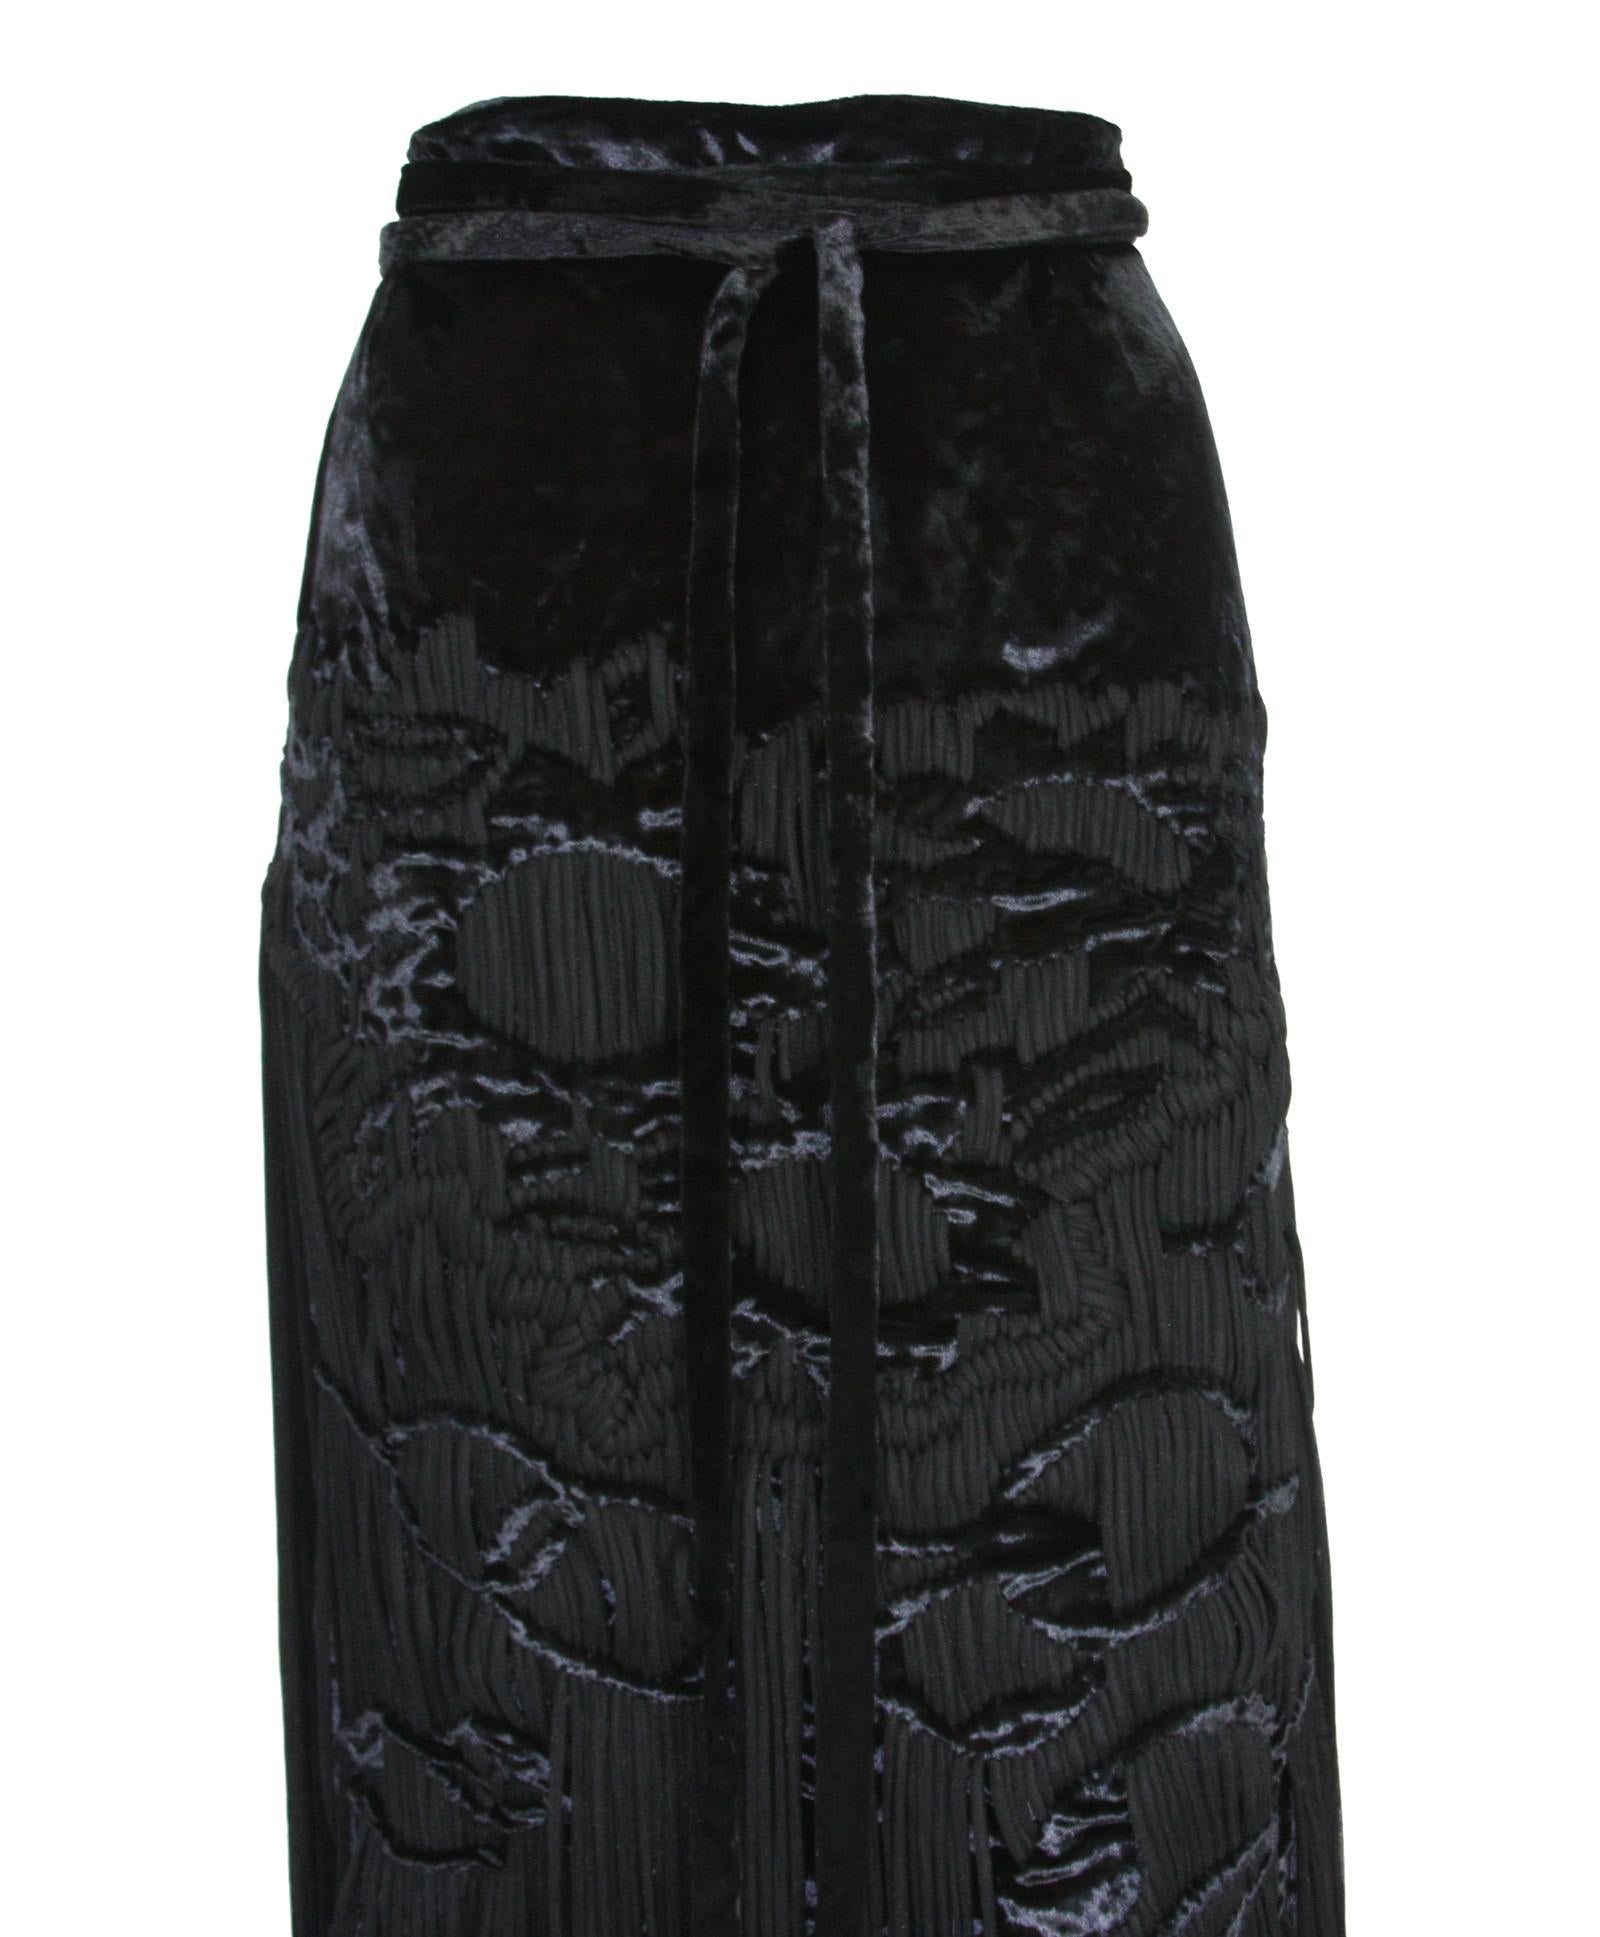 Tom Ford for Yves Saint Laurent 2001-2003 Collection Silk Top Velvet Skirt Suit  For Sale 8